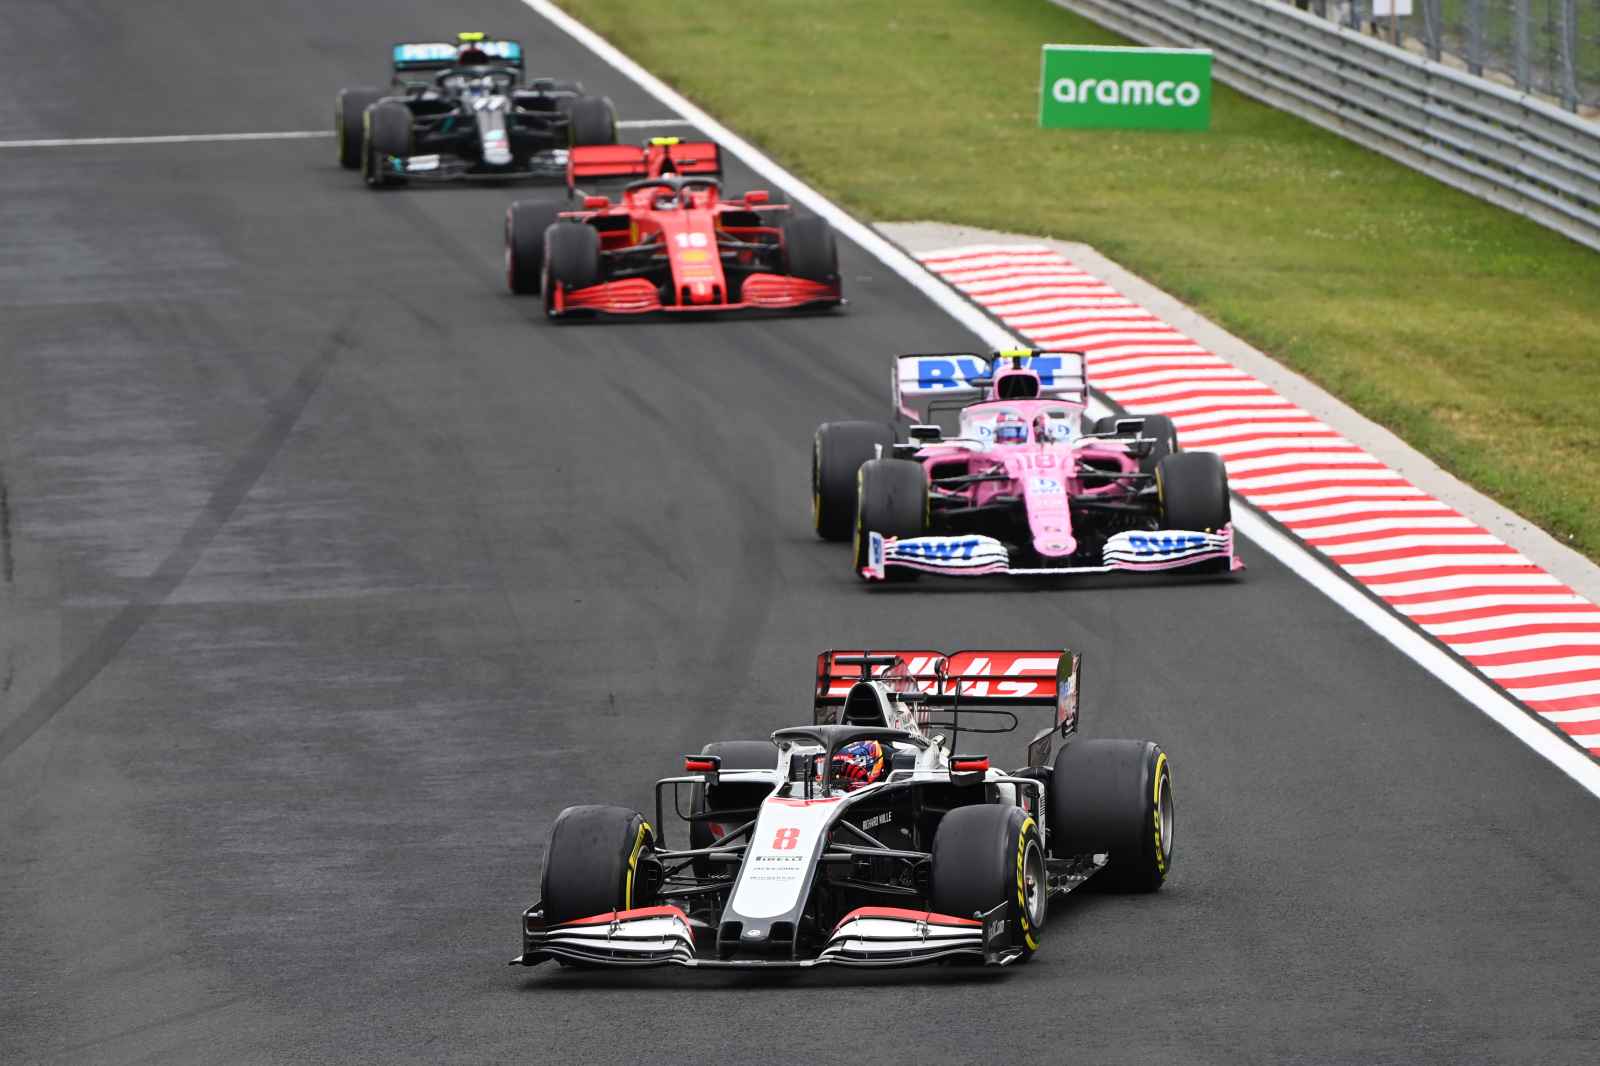 A Haas apostou na estratégia e os dois pilotos pararam antes da largada para pneus de pista seca